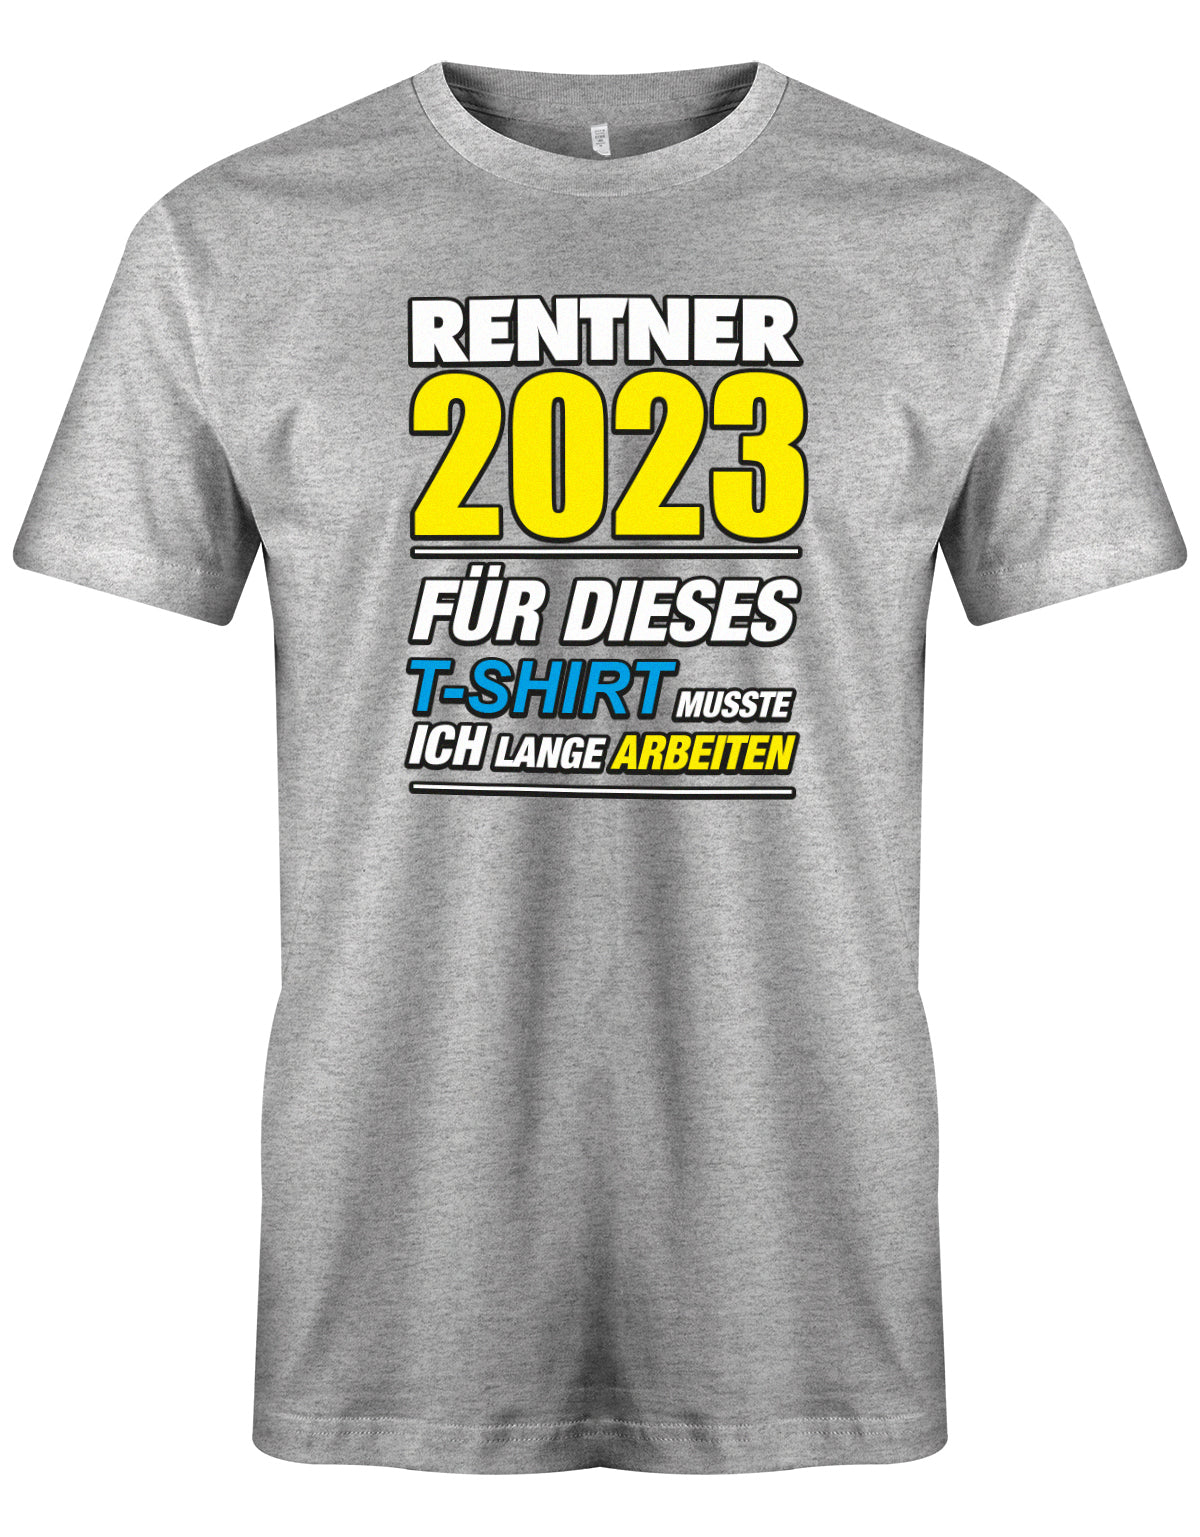 Rentner 2023 für dieses T-Shirt musste ich lange arbeiten - Männer T-Shirt Grau